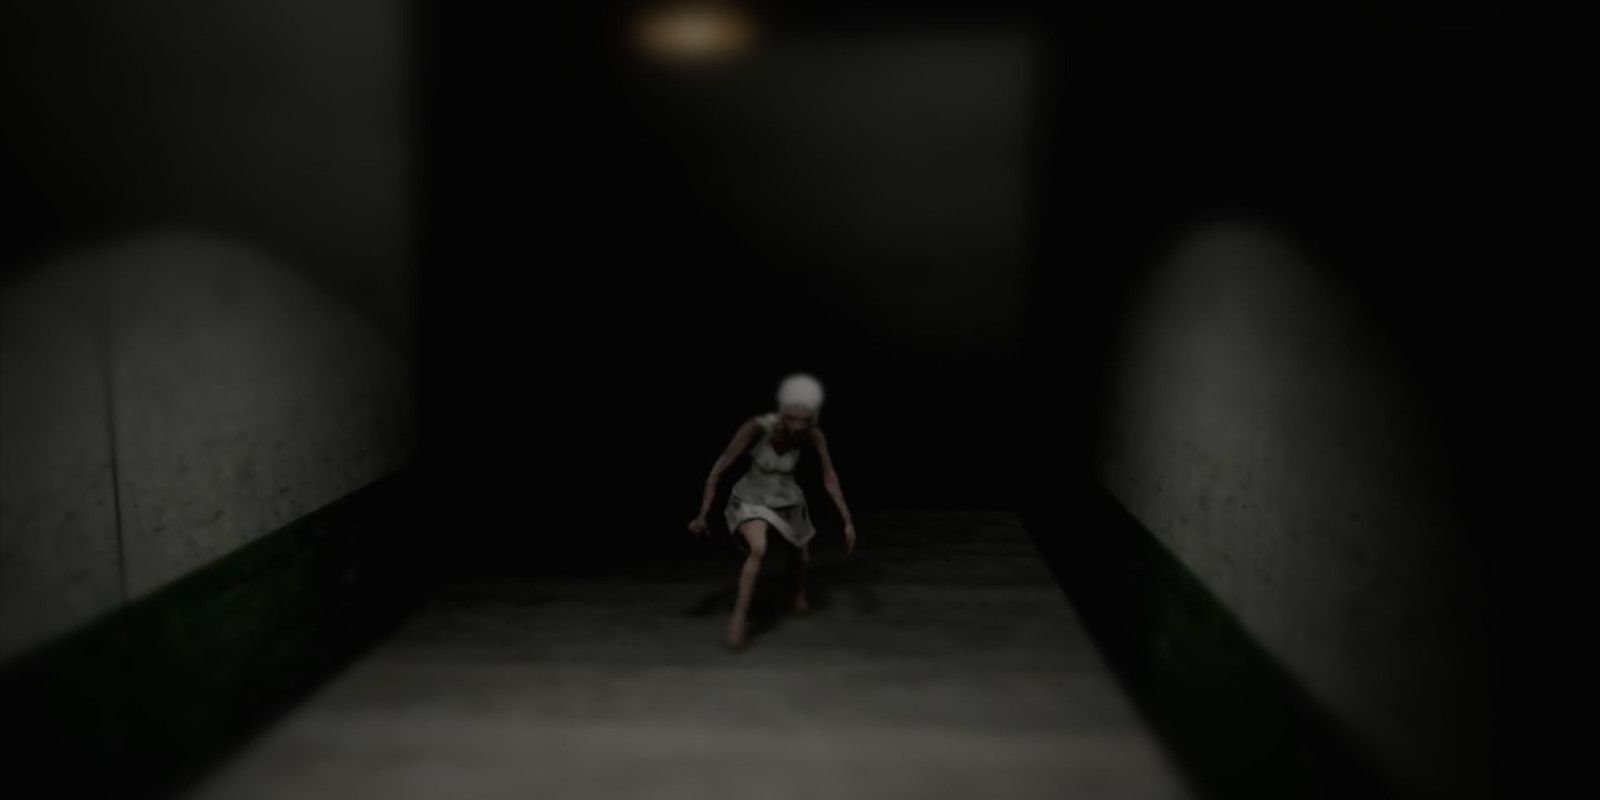 Emily in darkly-lit hallway